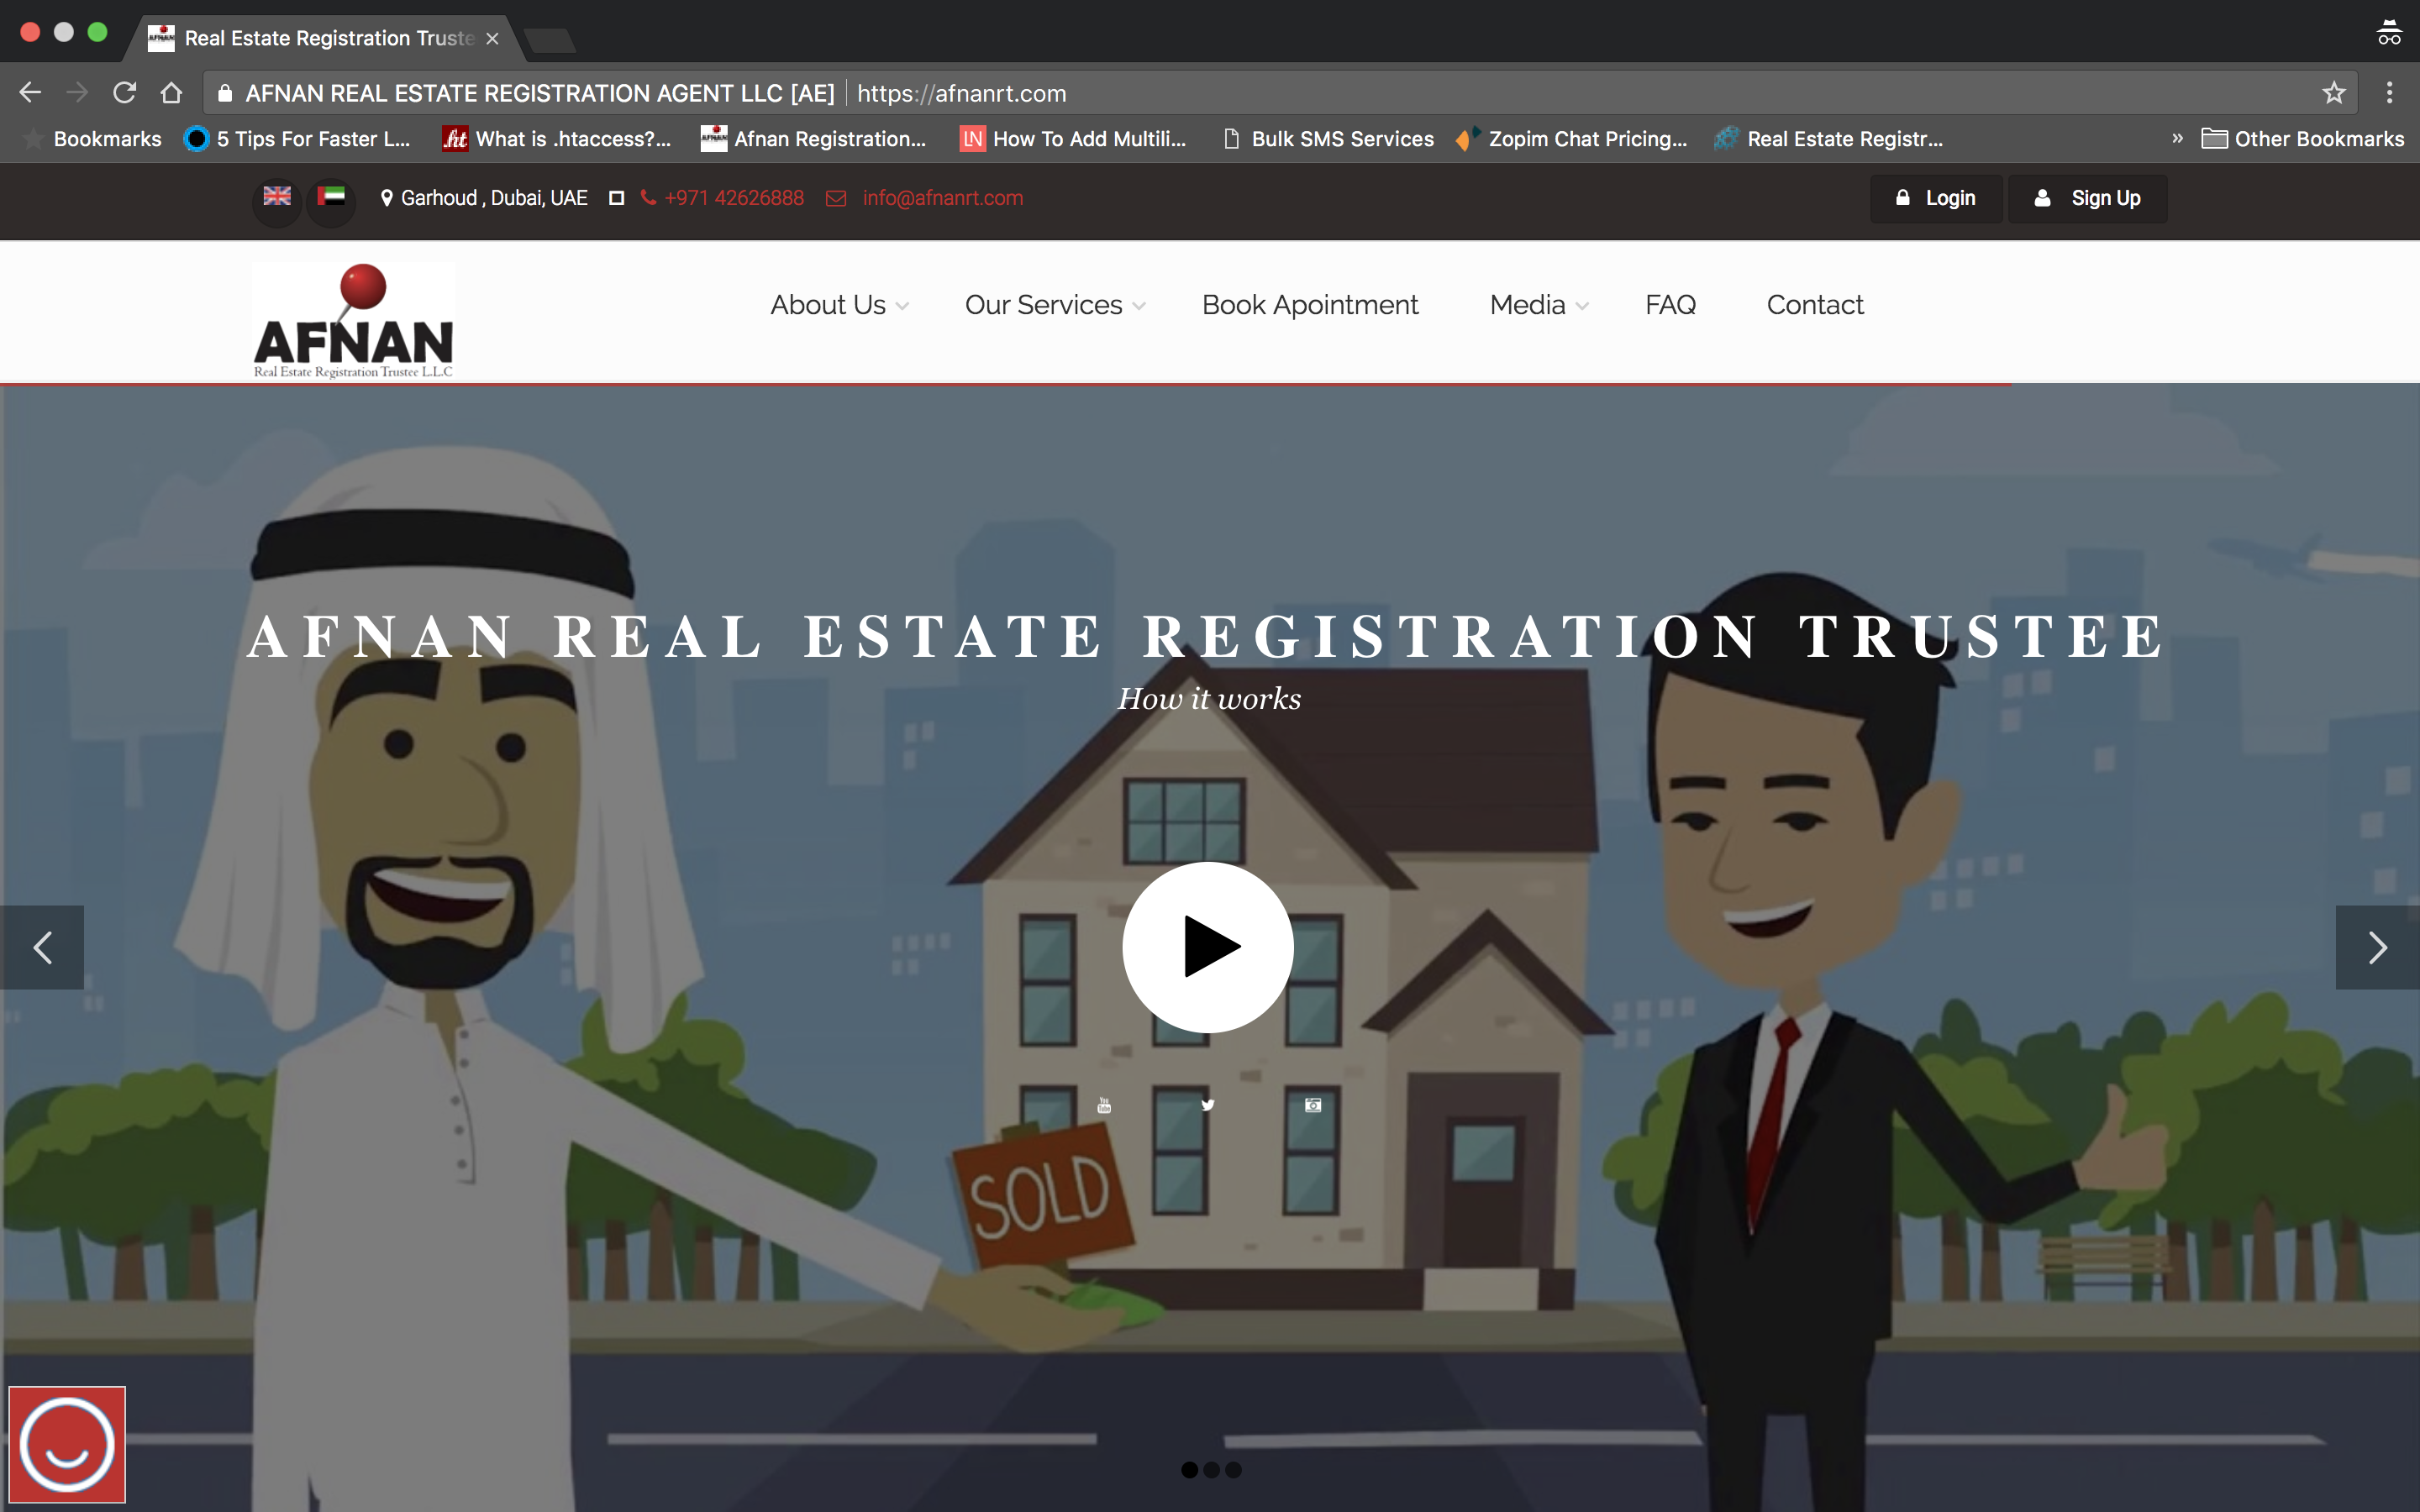 Afnan Real Estate Registration Trustee home page